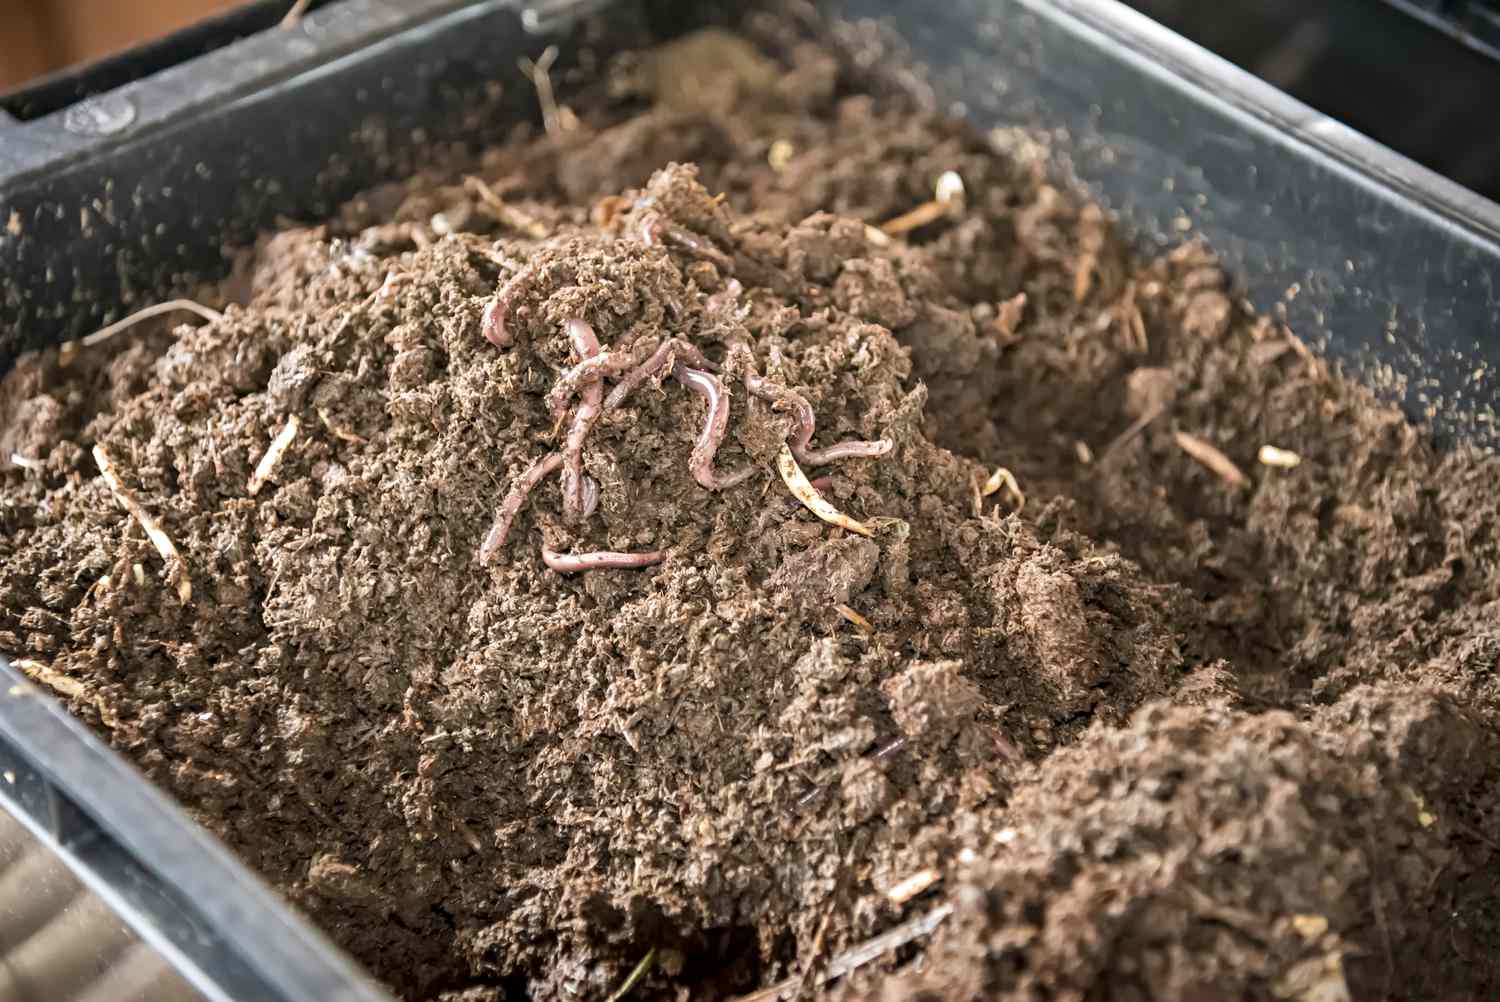 Nahaufnahme eines Behälters mit Erde und lebenden Würmern obenauf